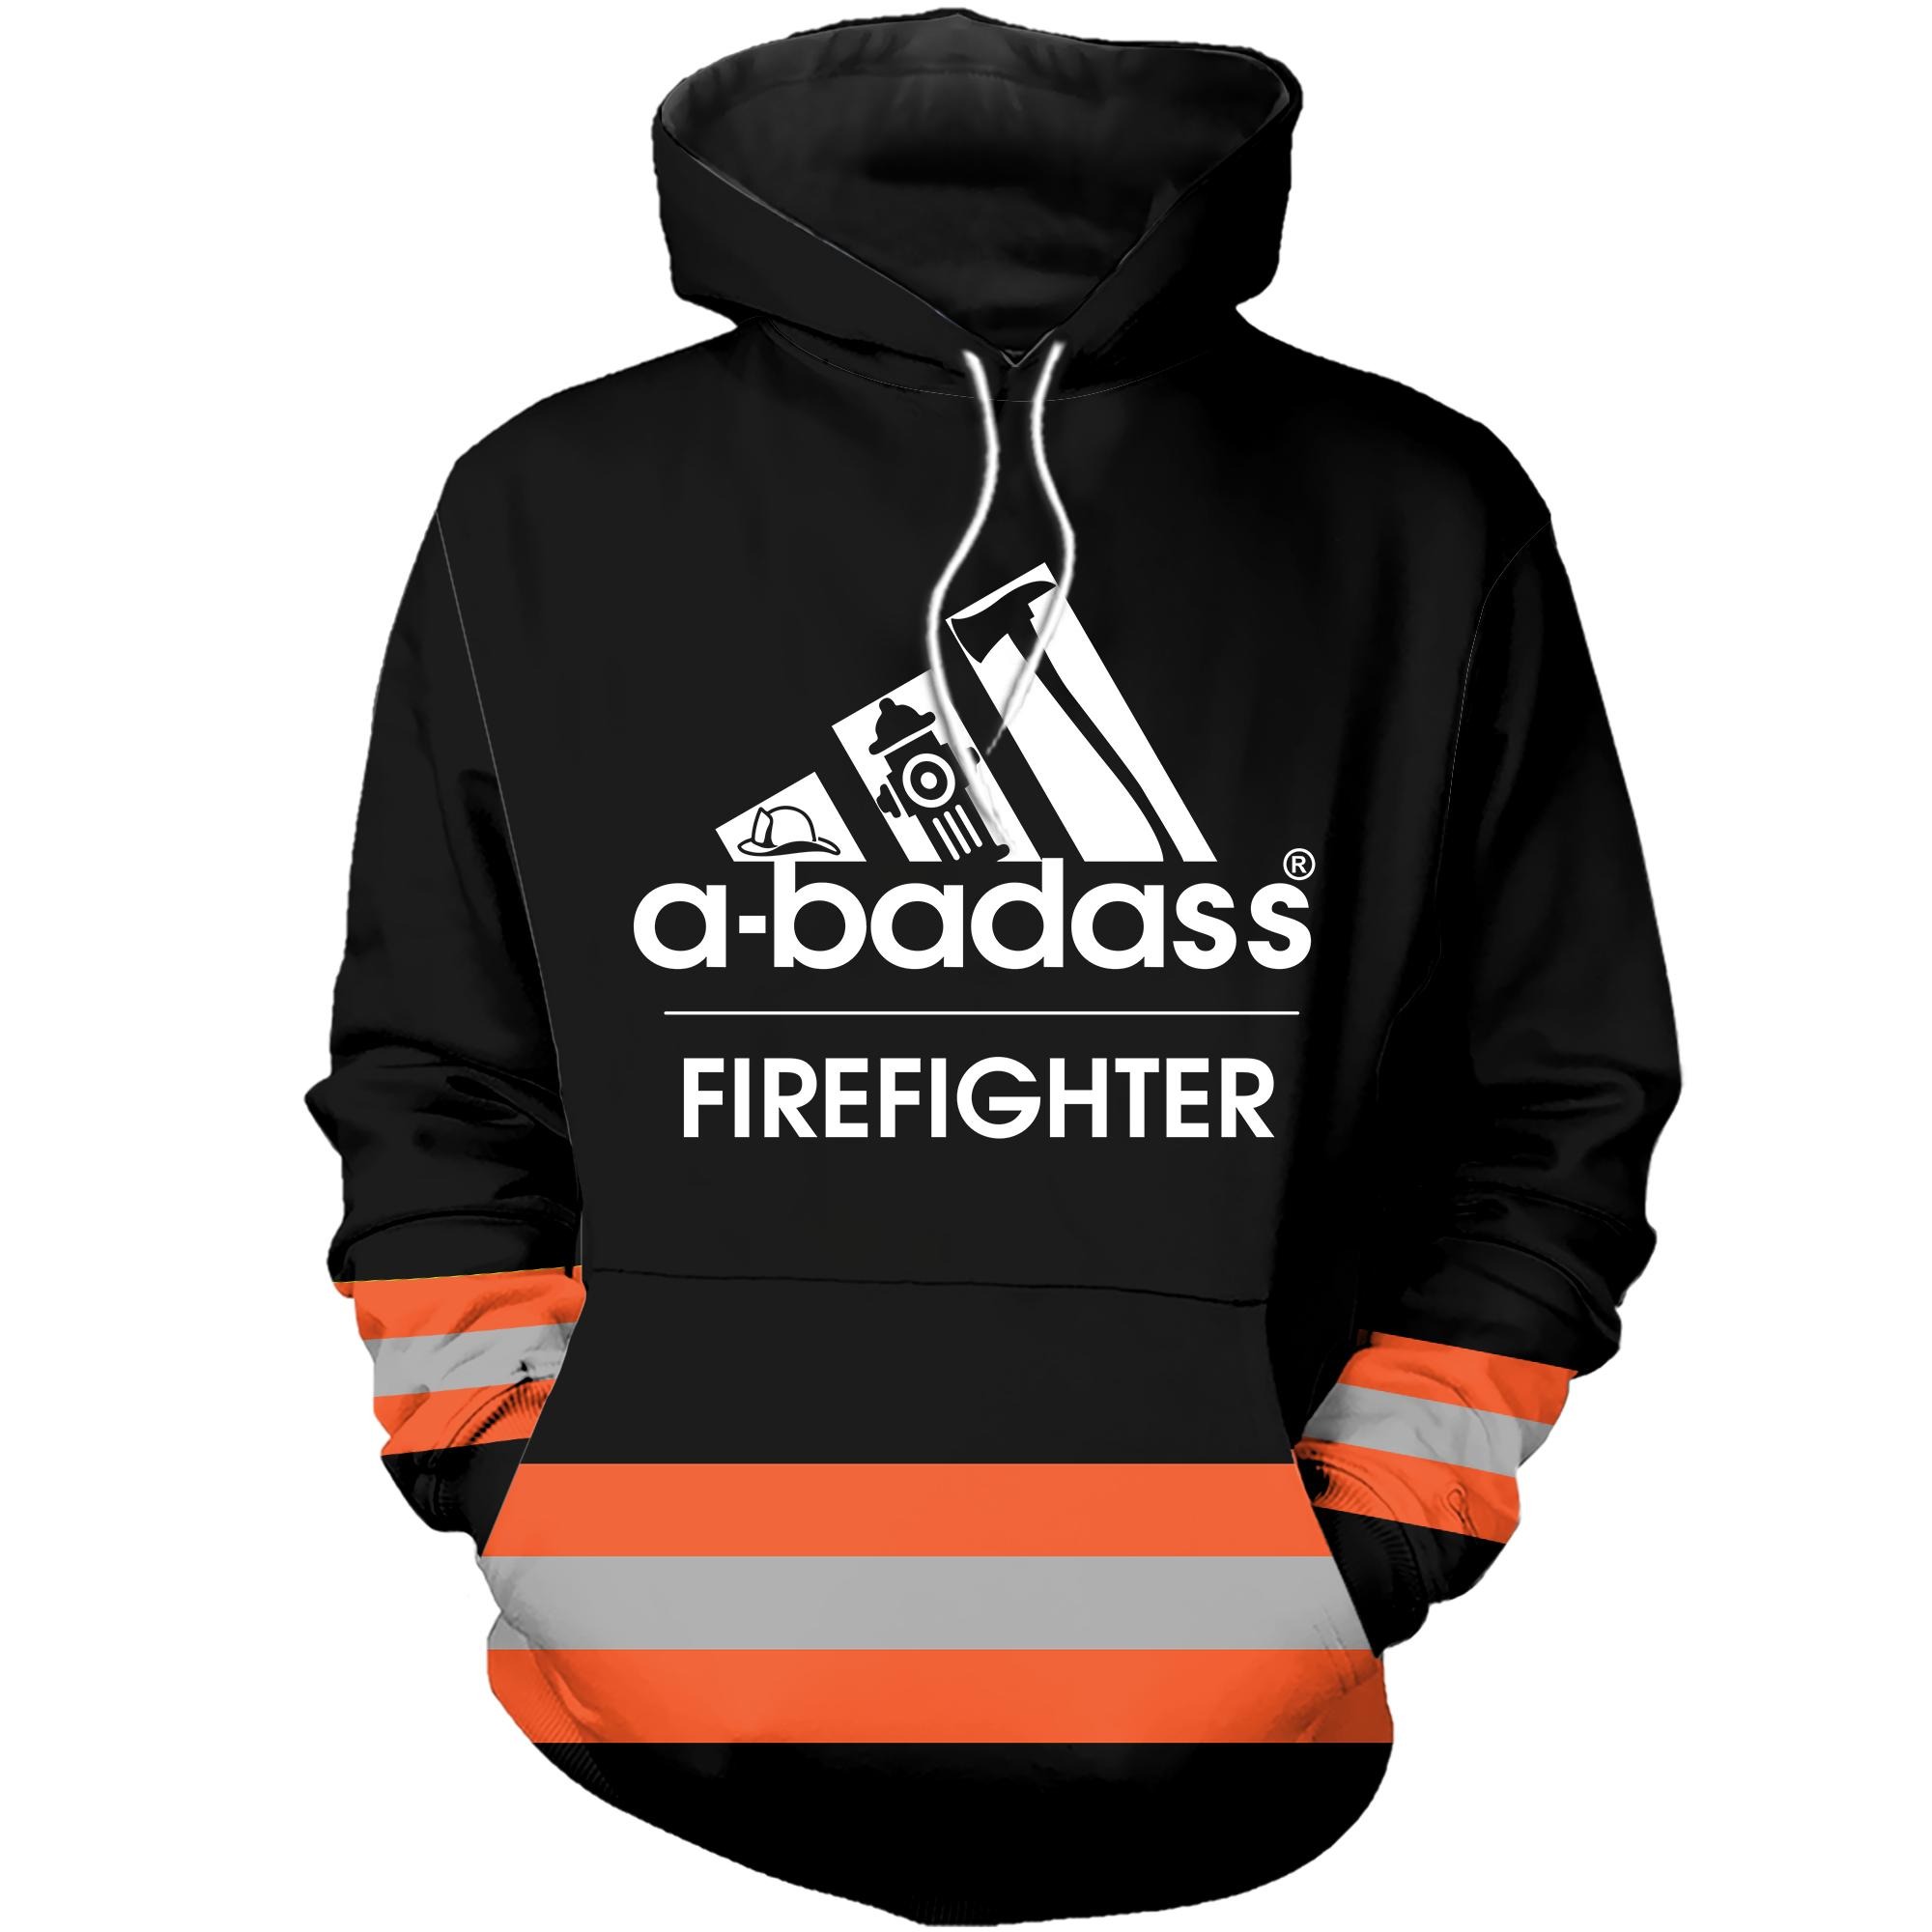 A badass firefighter 3D cool hoodie